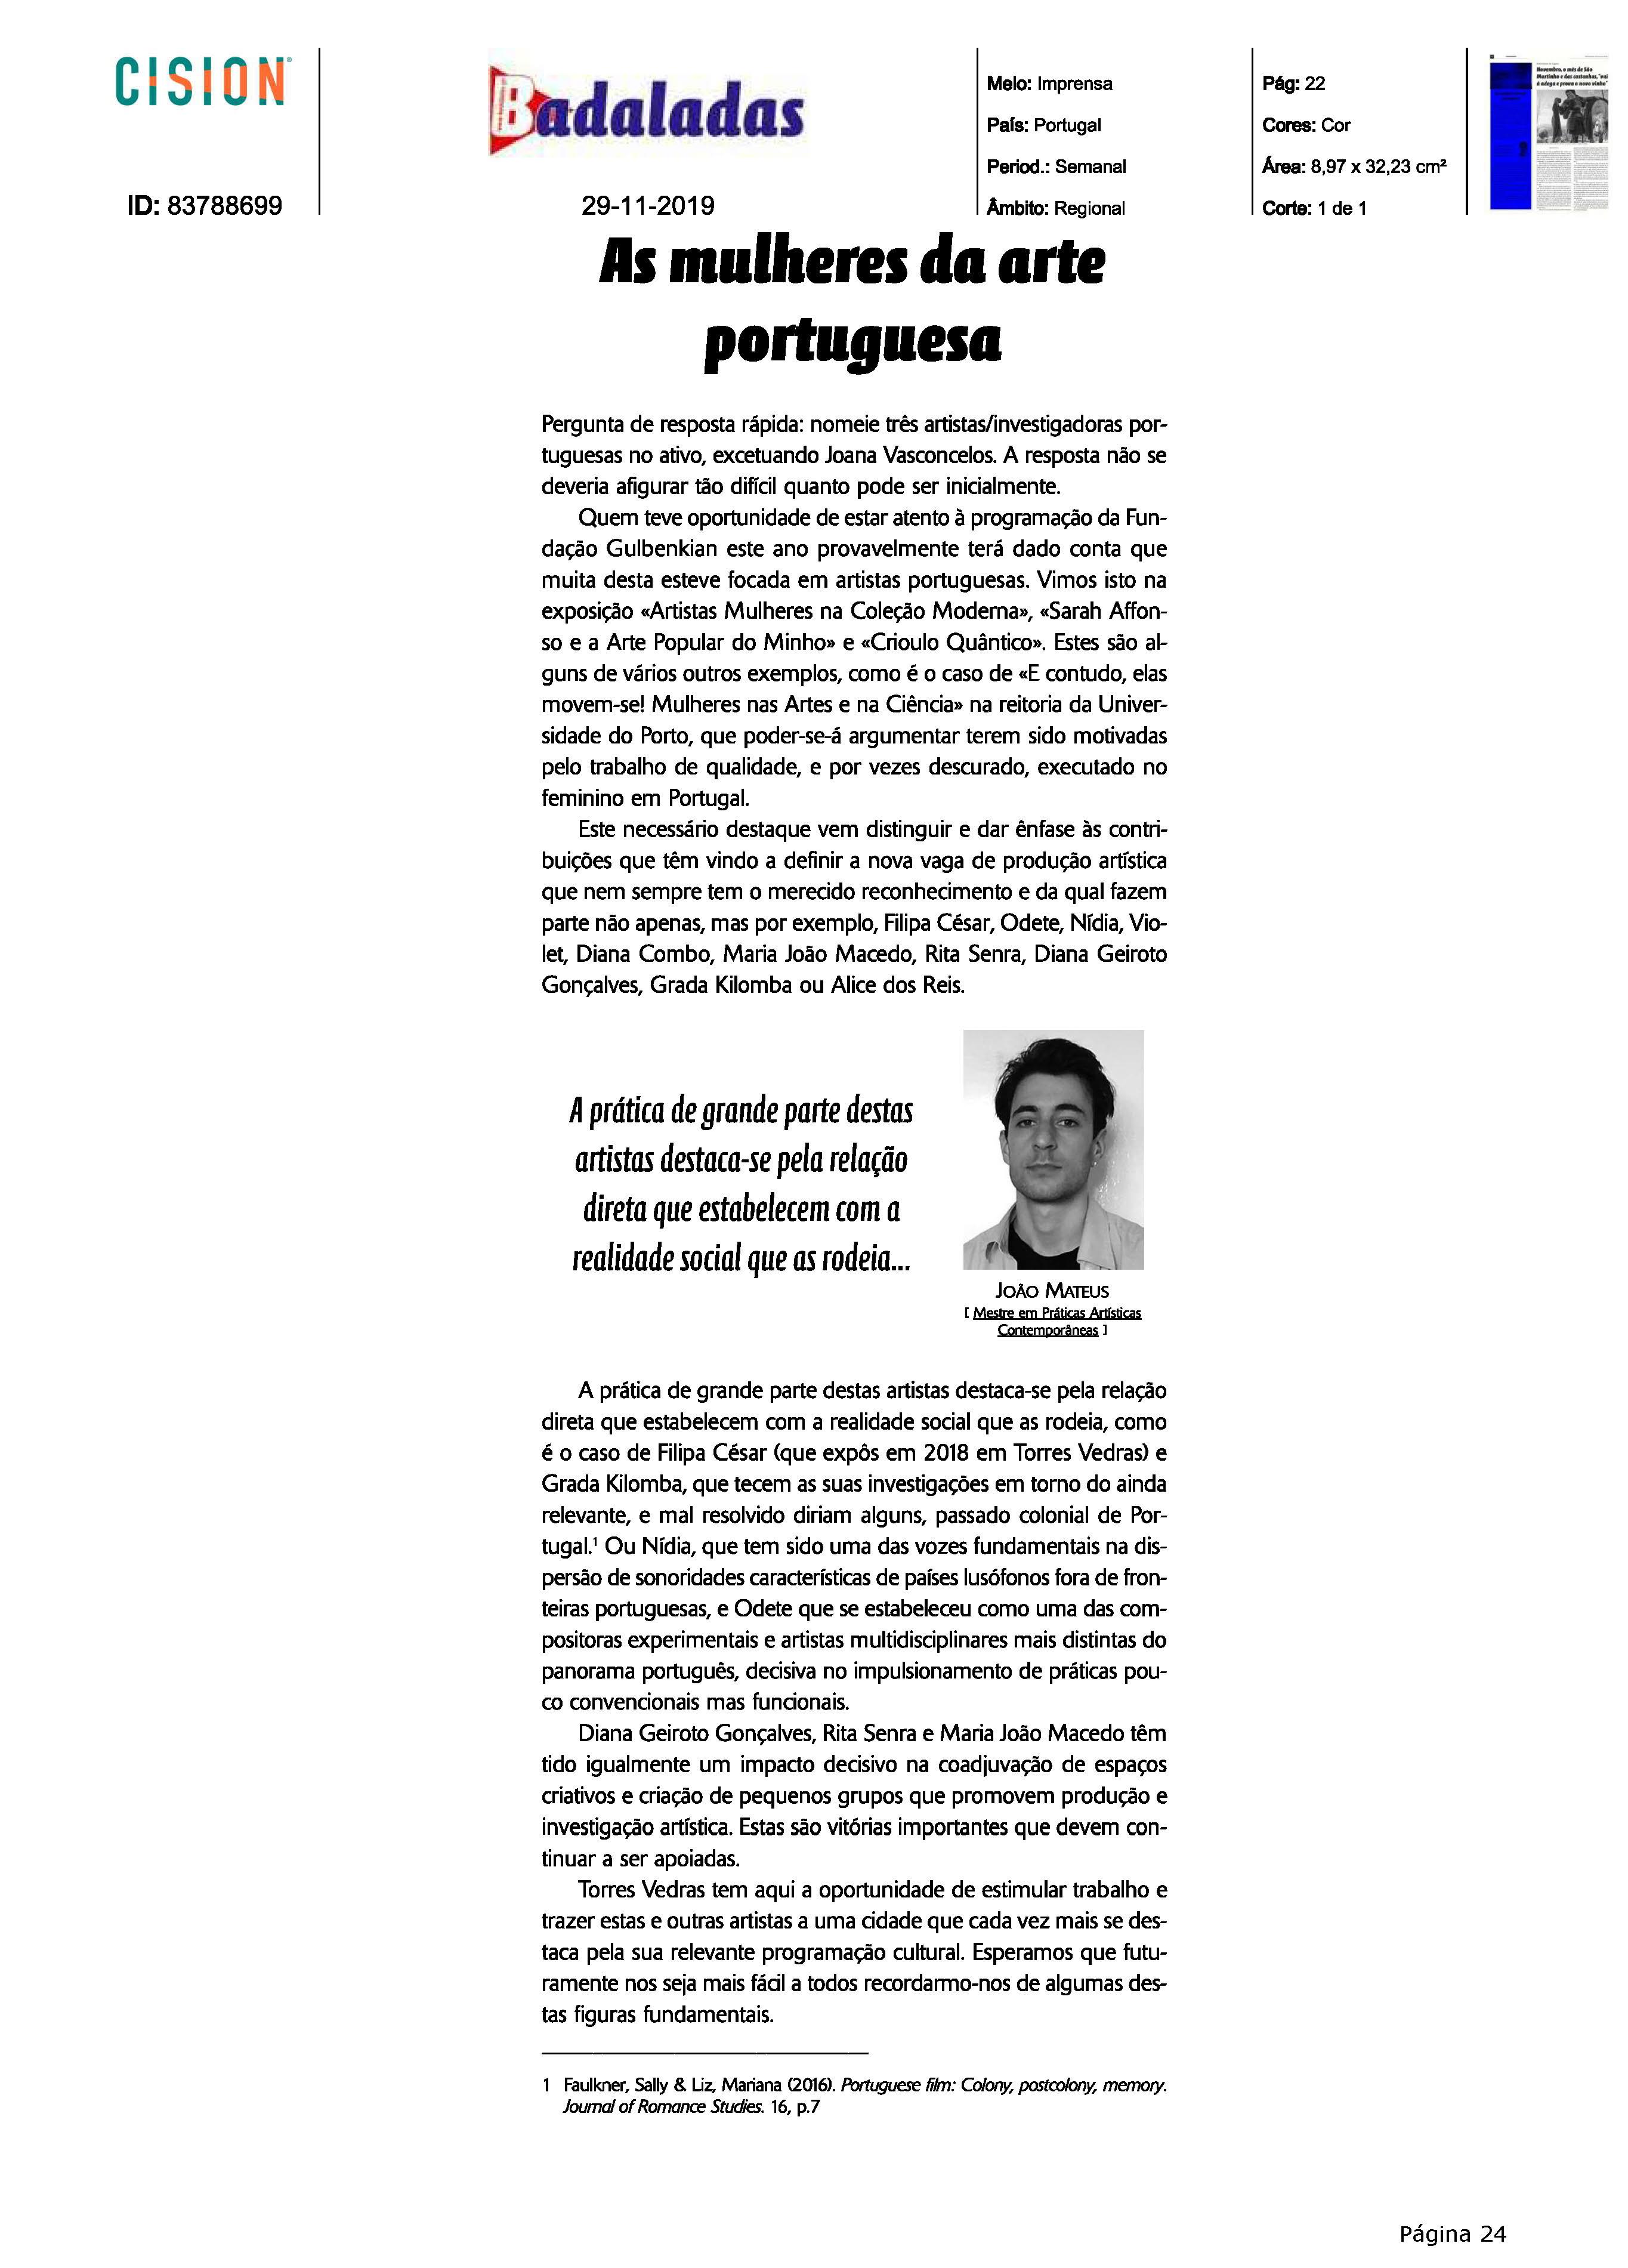 Jornal Badaladas_29 nov 2019_p.22